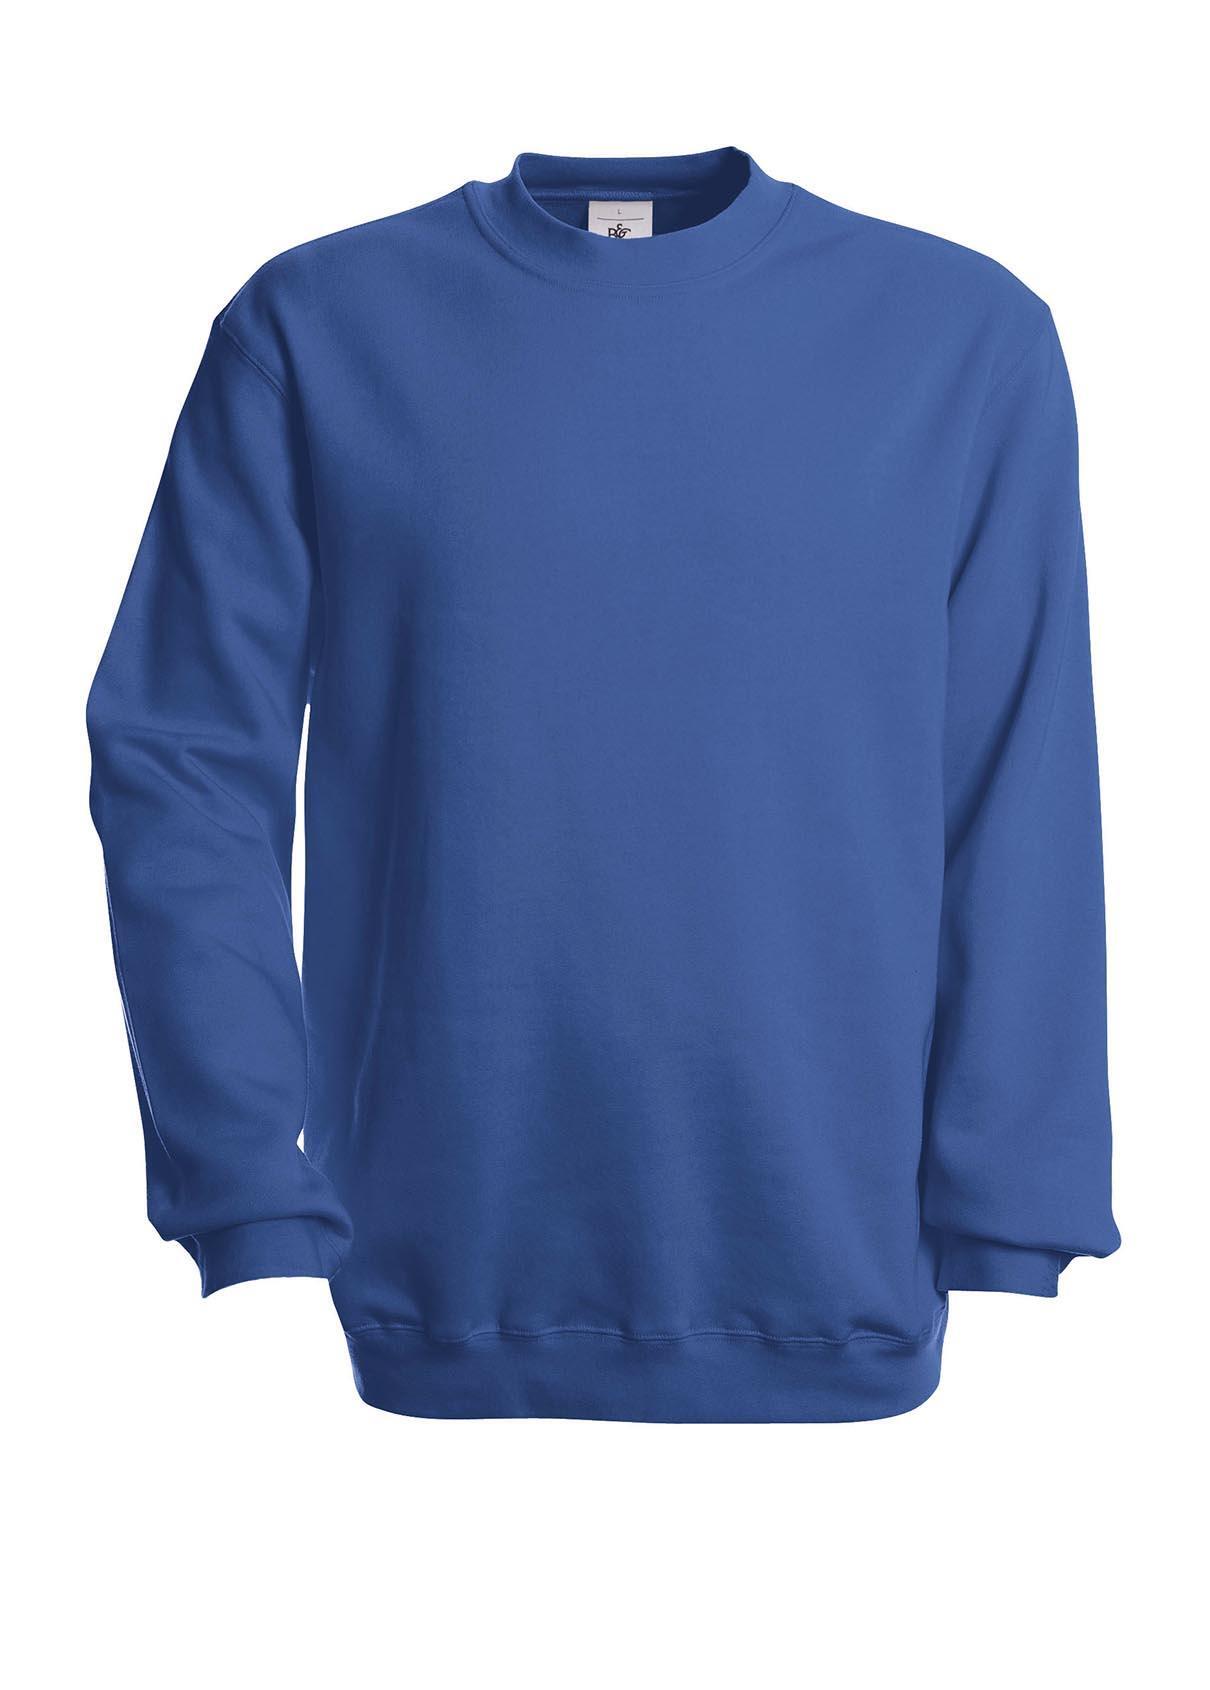 Royal blauwe trui Sweater heren